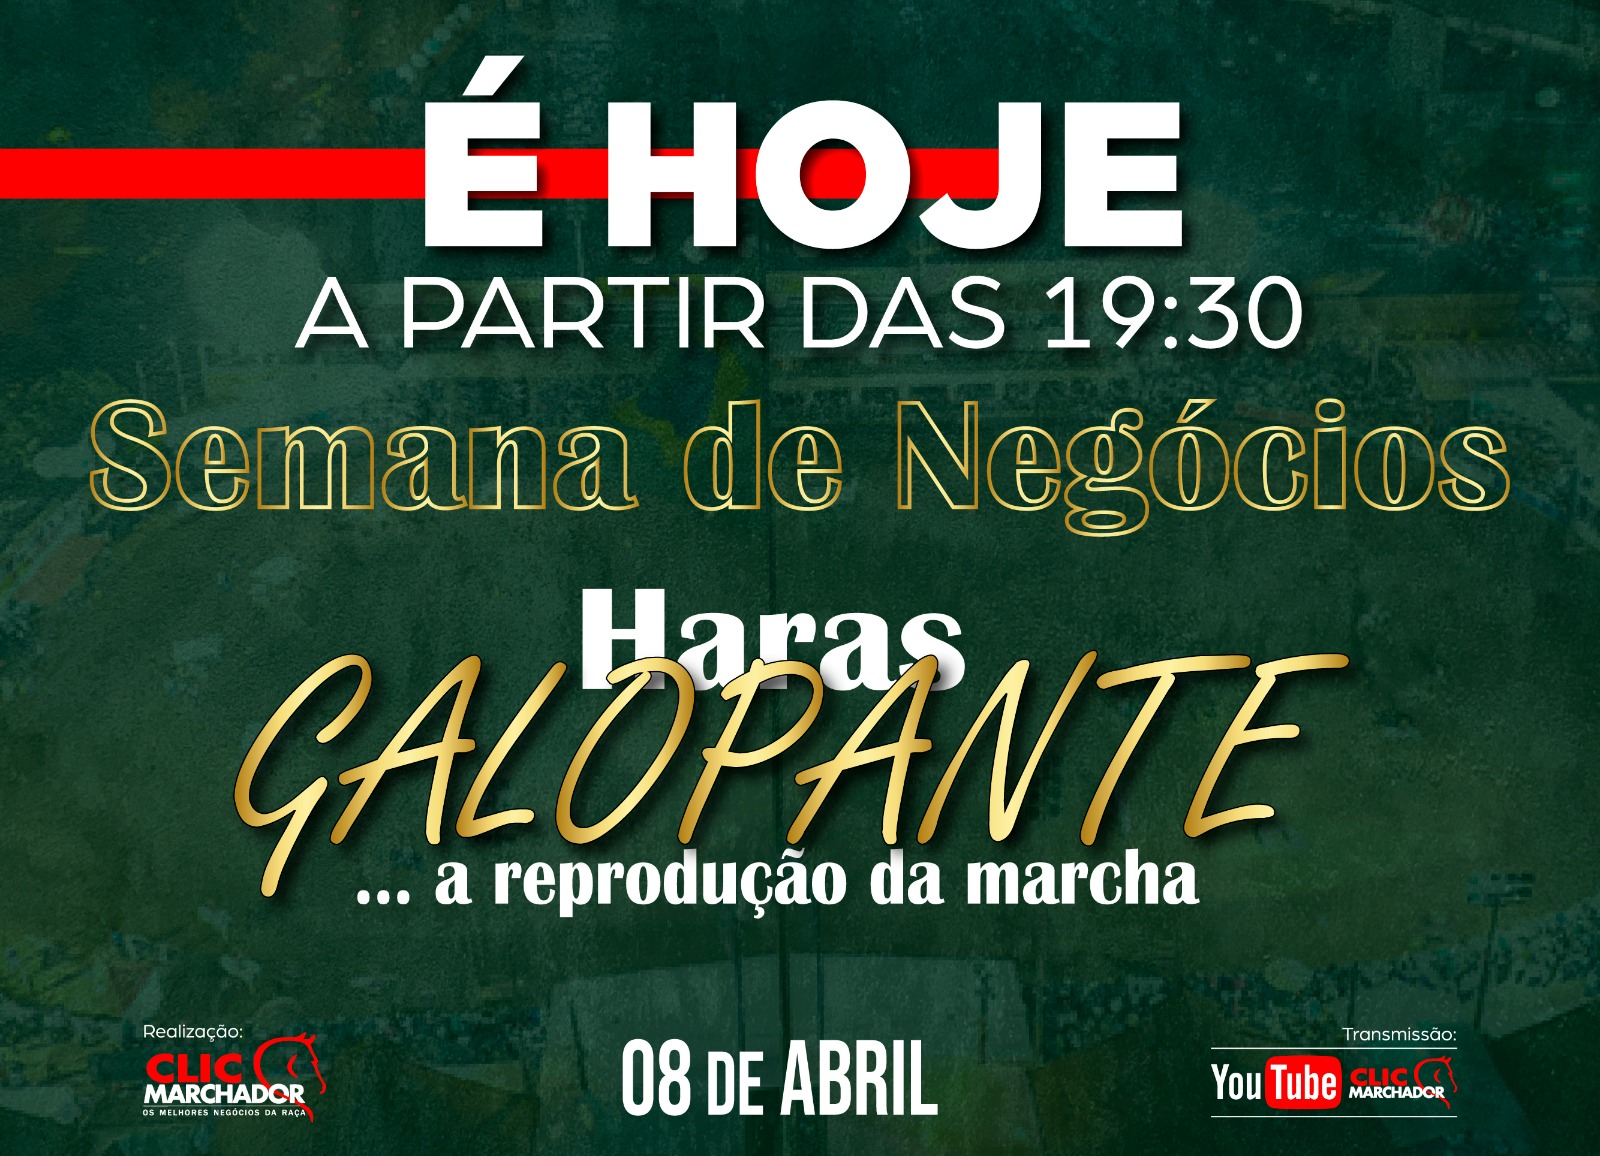 SEMANA DE NEGÓCIOS HARAS GALOPANTE